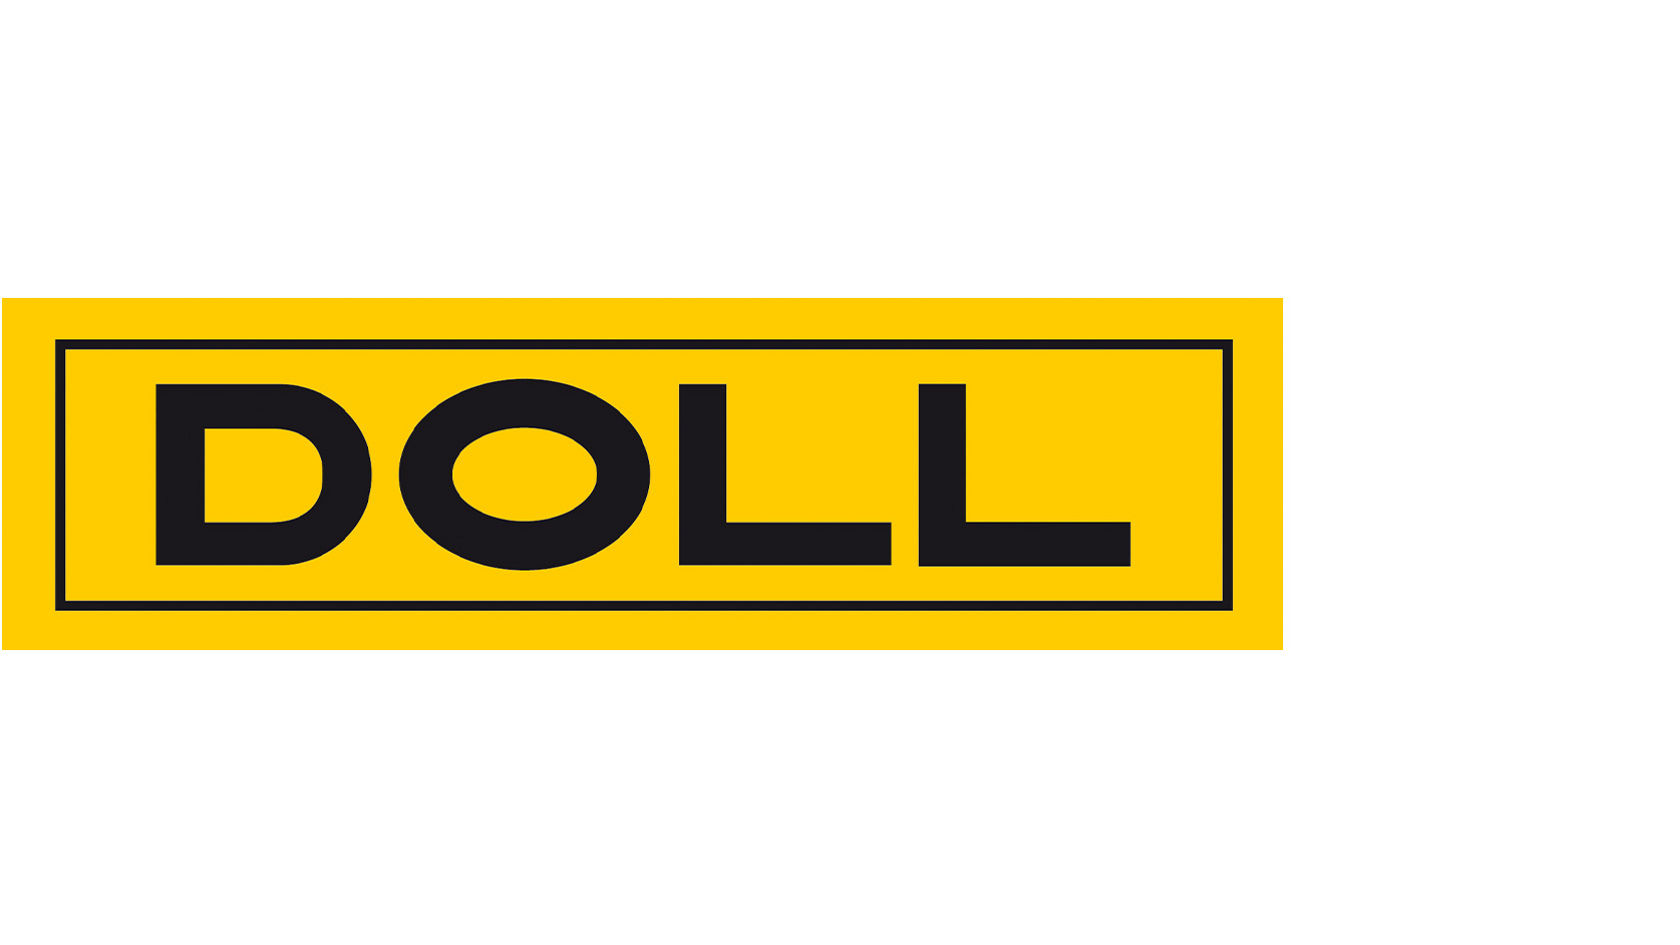 Doll Fahrzeugbau GmbH